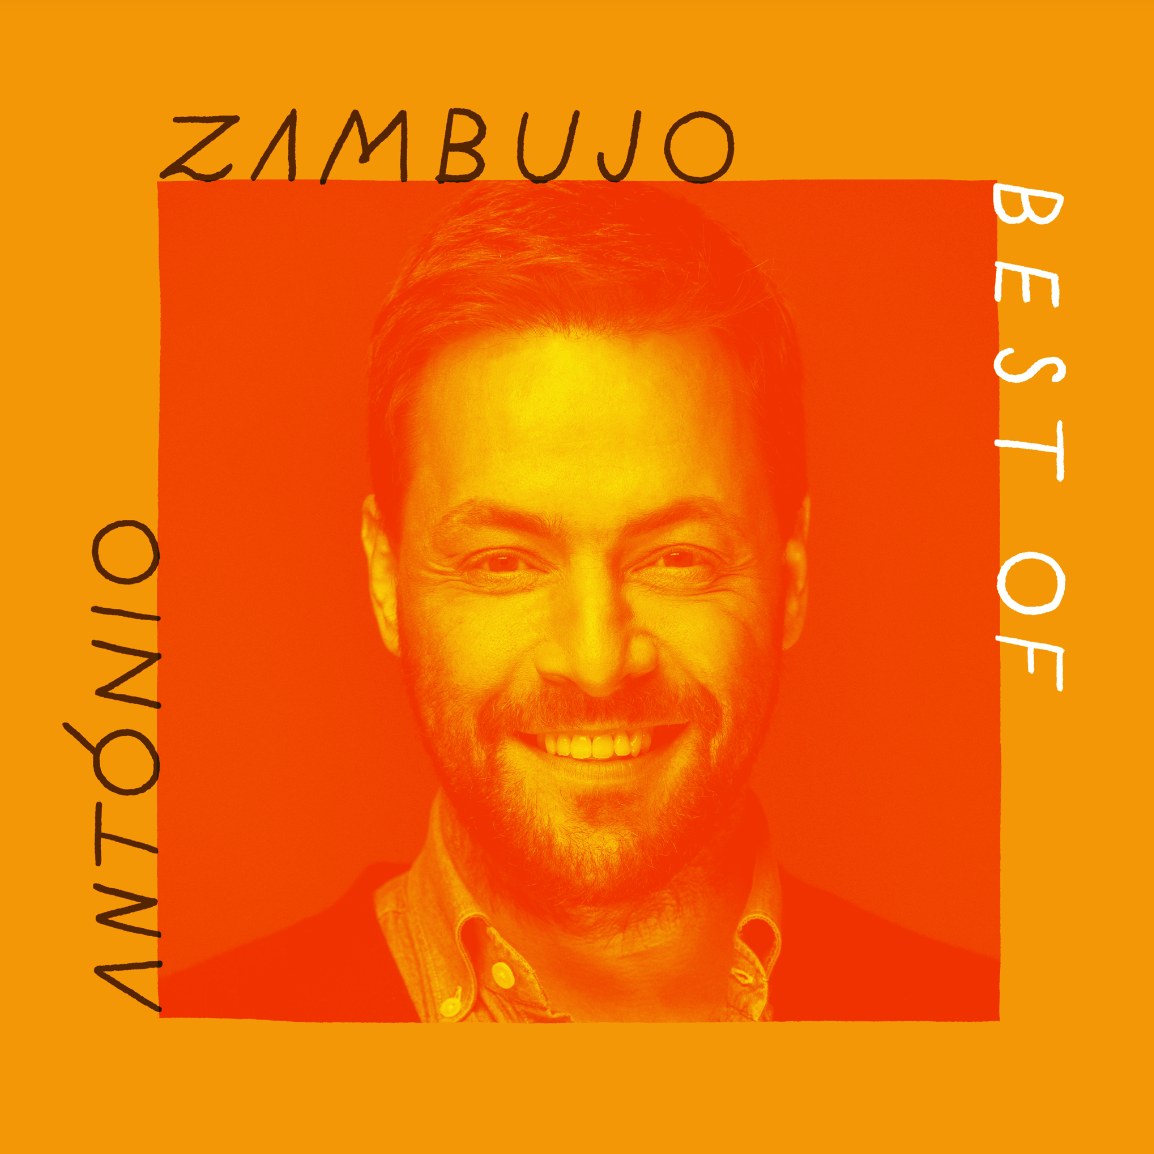 António Zambujo lança primeiro Best Of. Disco reúne 20 canções do repertório do artista